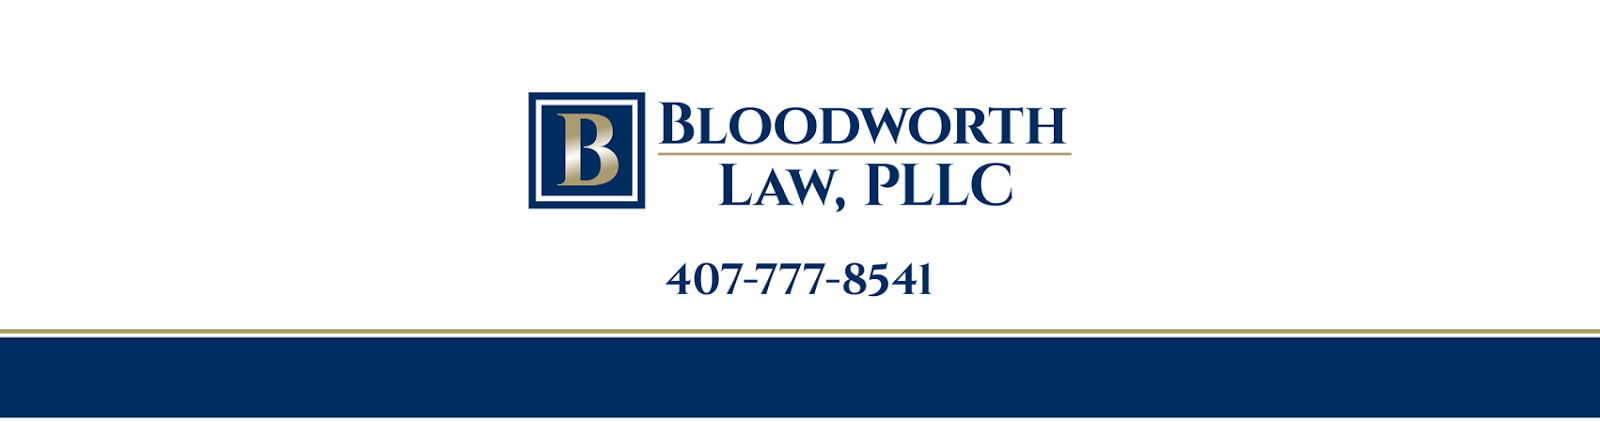 L. Reed Bloodworth, Bloodworth Law, PLLC